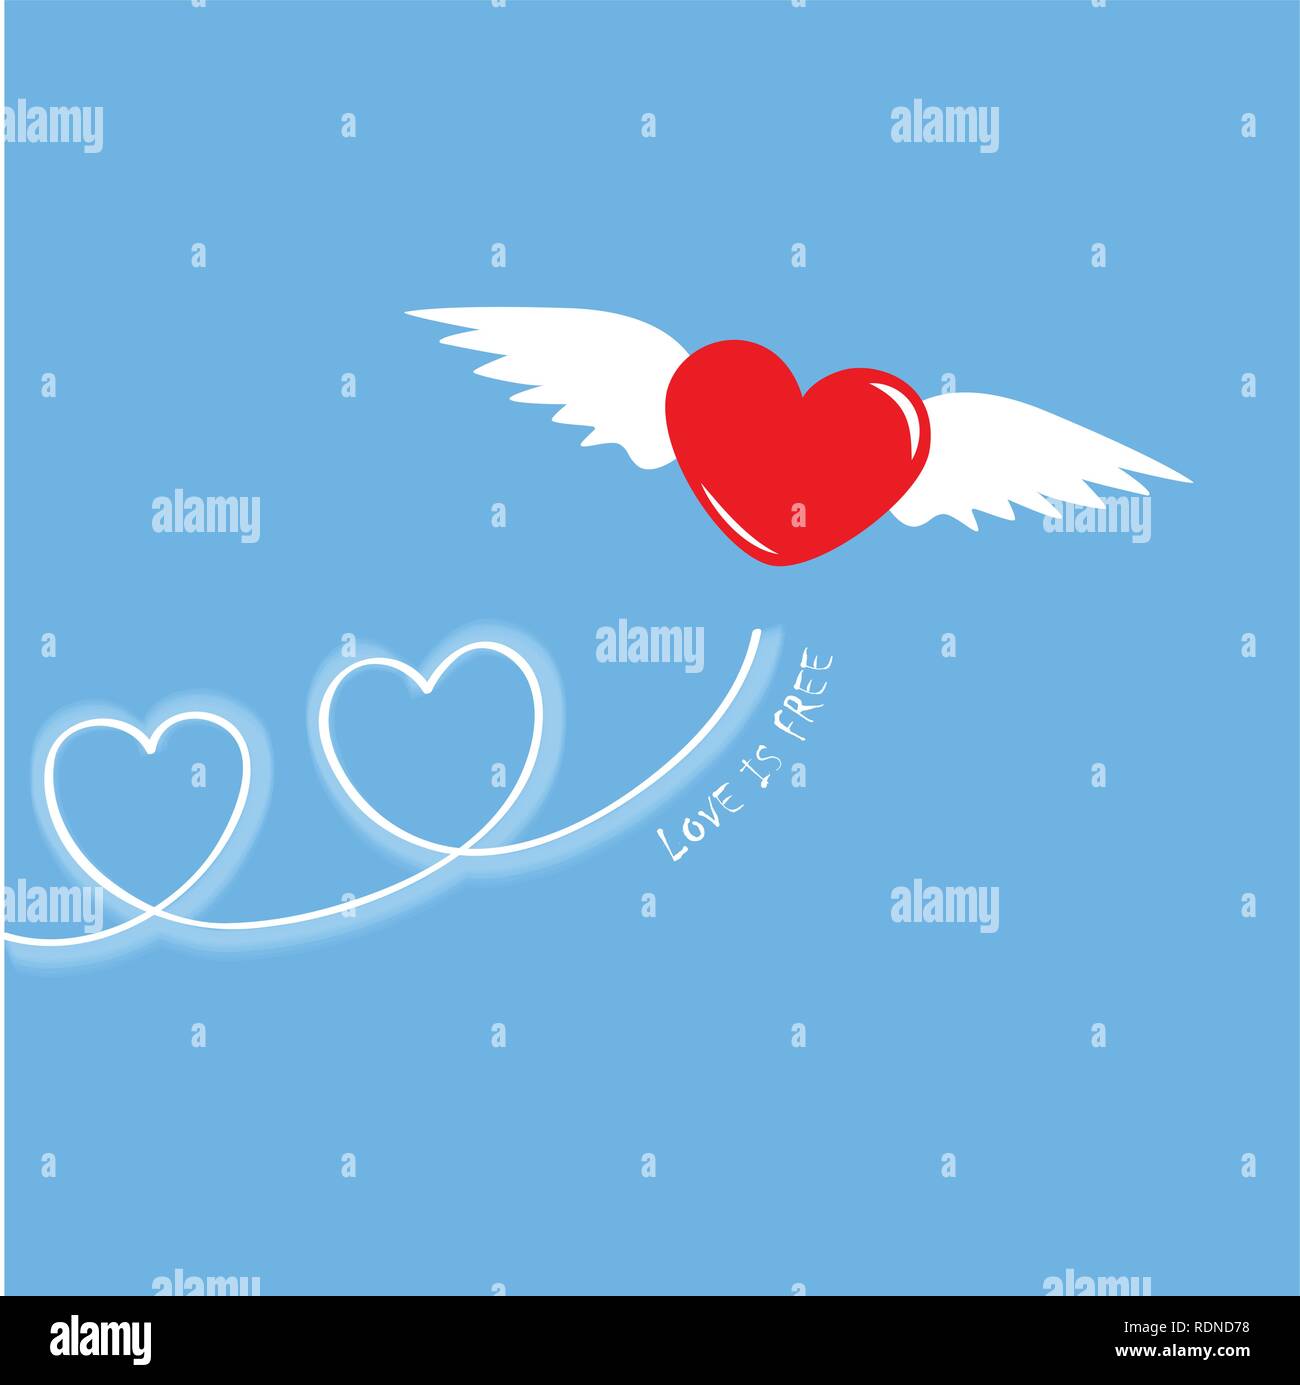 L'amour est libre flying heart vector illustration EPS10 Illustration de Vecteur